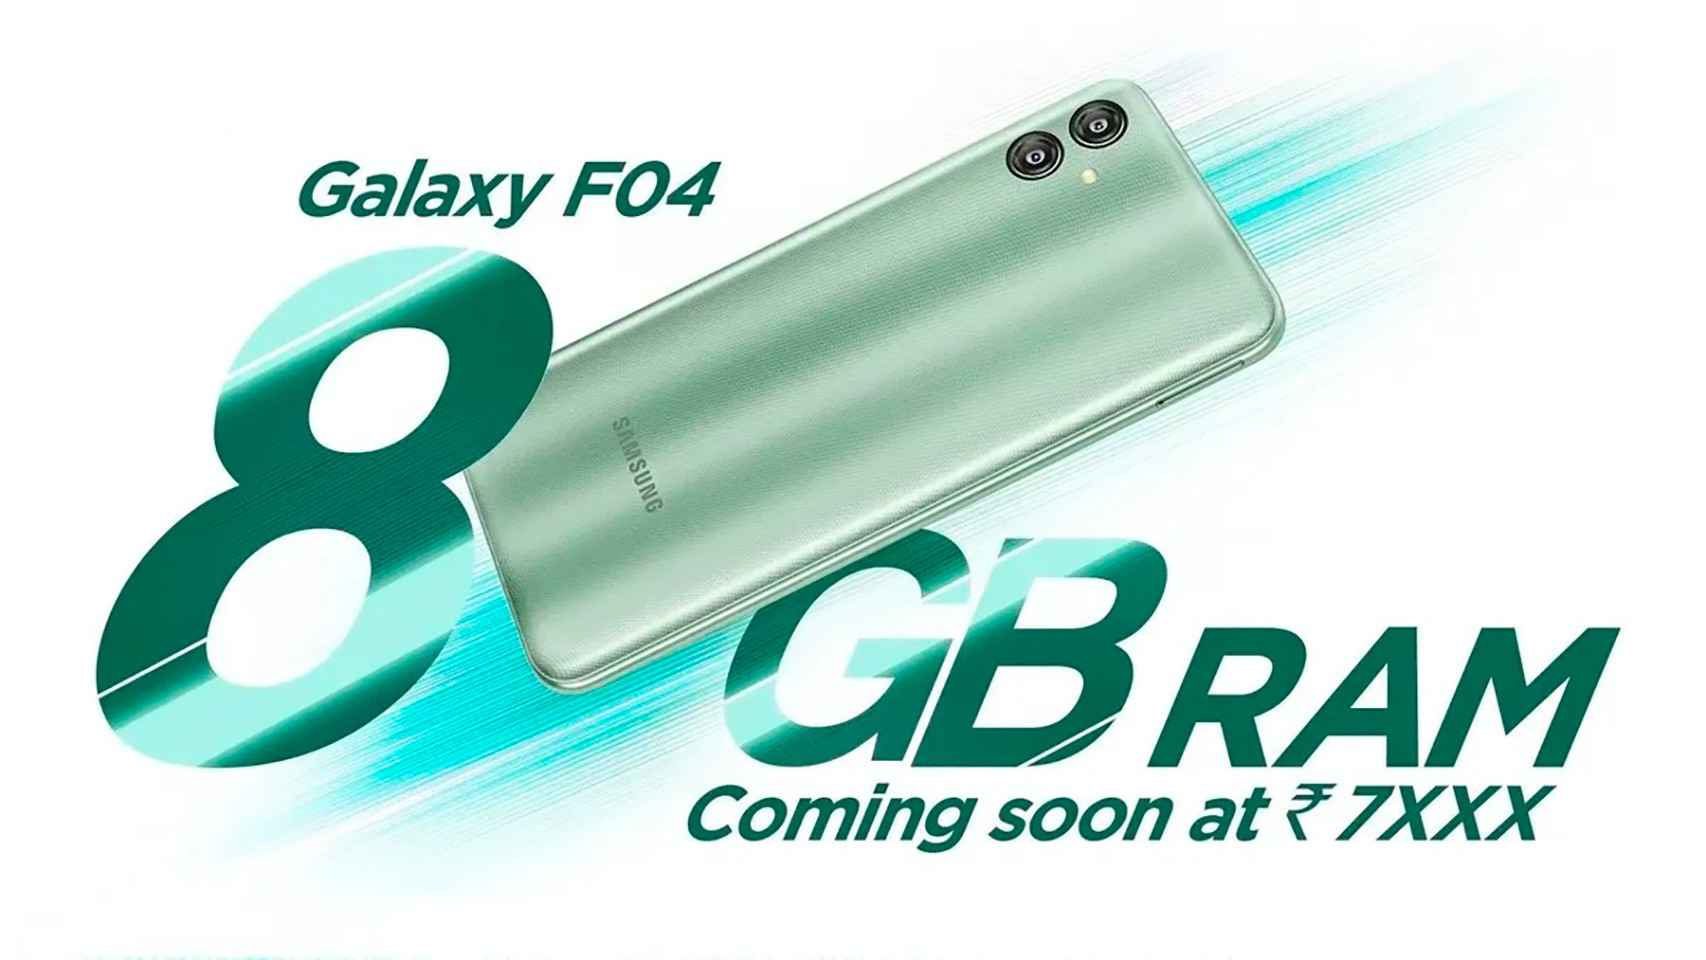 Los 8 GB de RAM del Galaxy F04 de Samsung son un gran reclamo para un gama de entrada